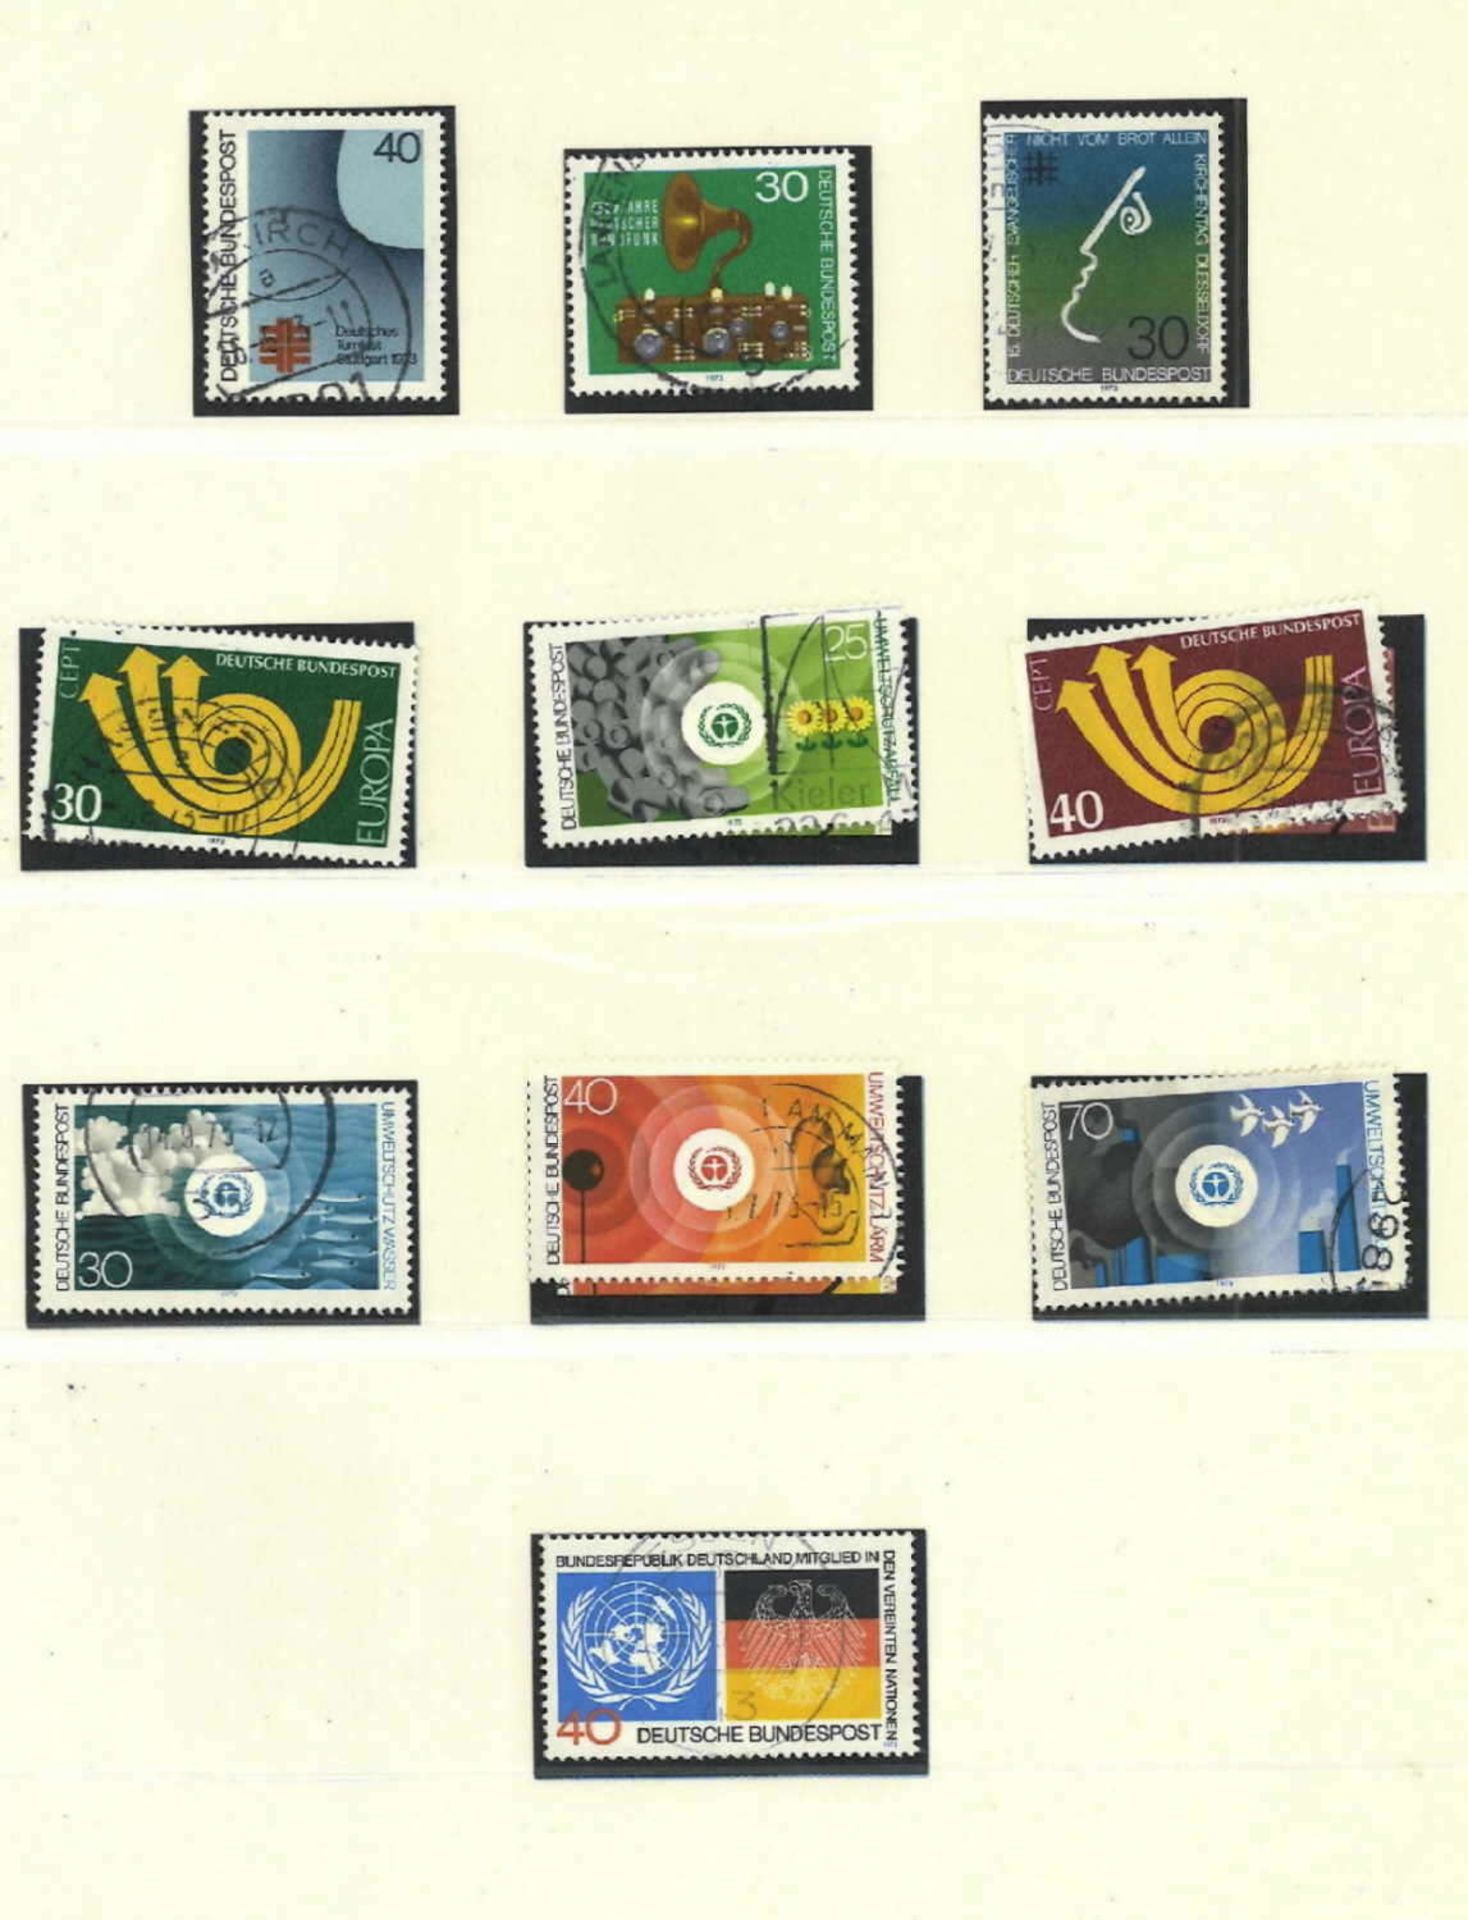 BRD, Lindner Vordruck Falzlos-Album, 1970-1979, teilweise bestückt mit gestempelten Marken - Bild 2 aus 2